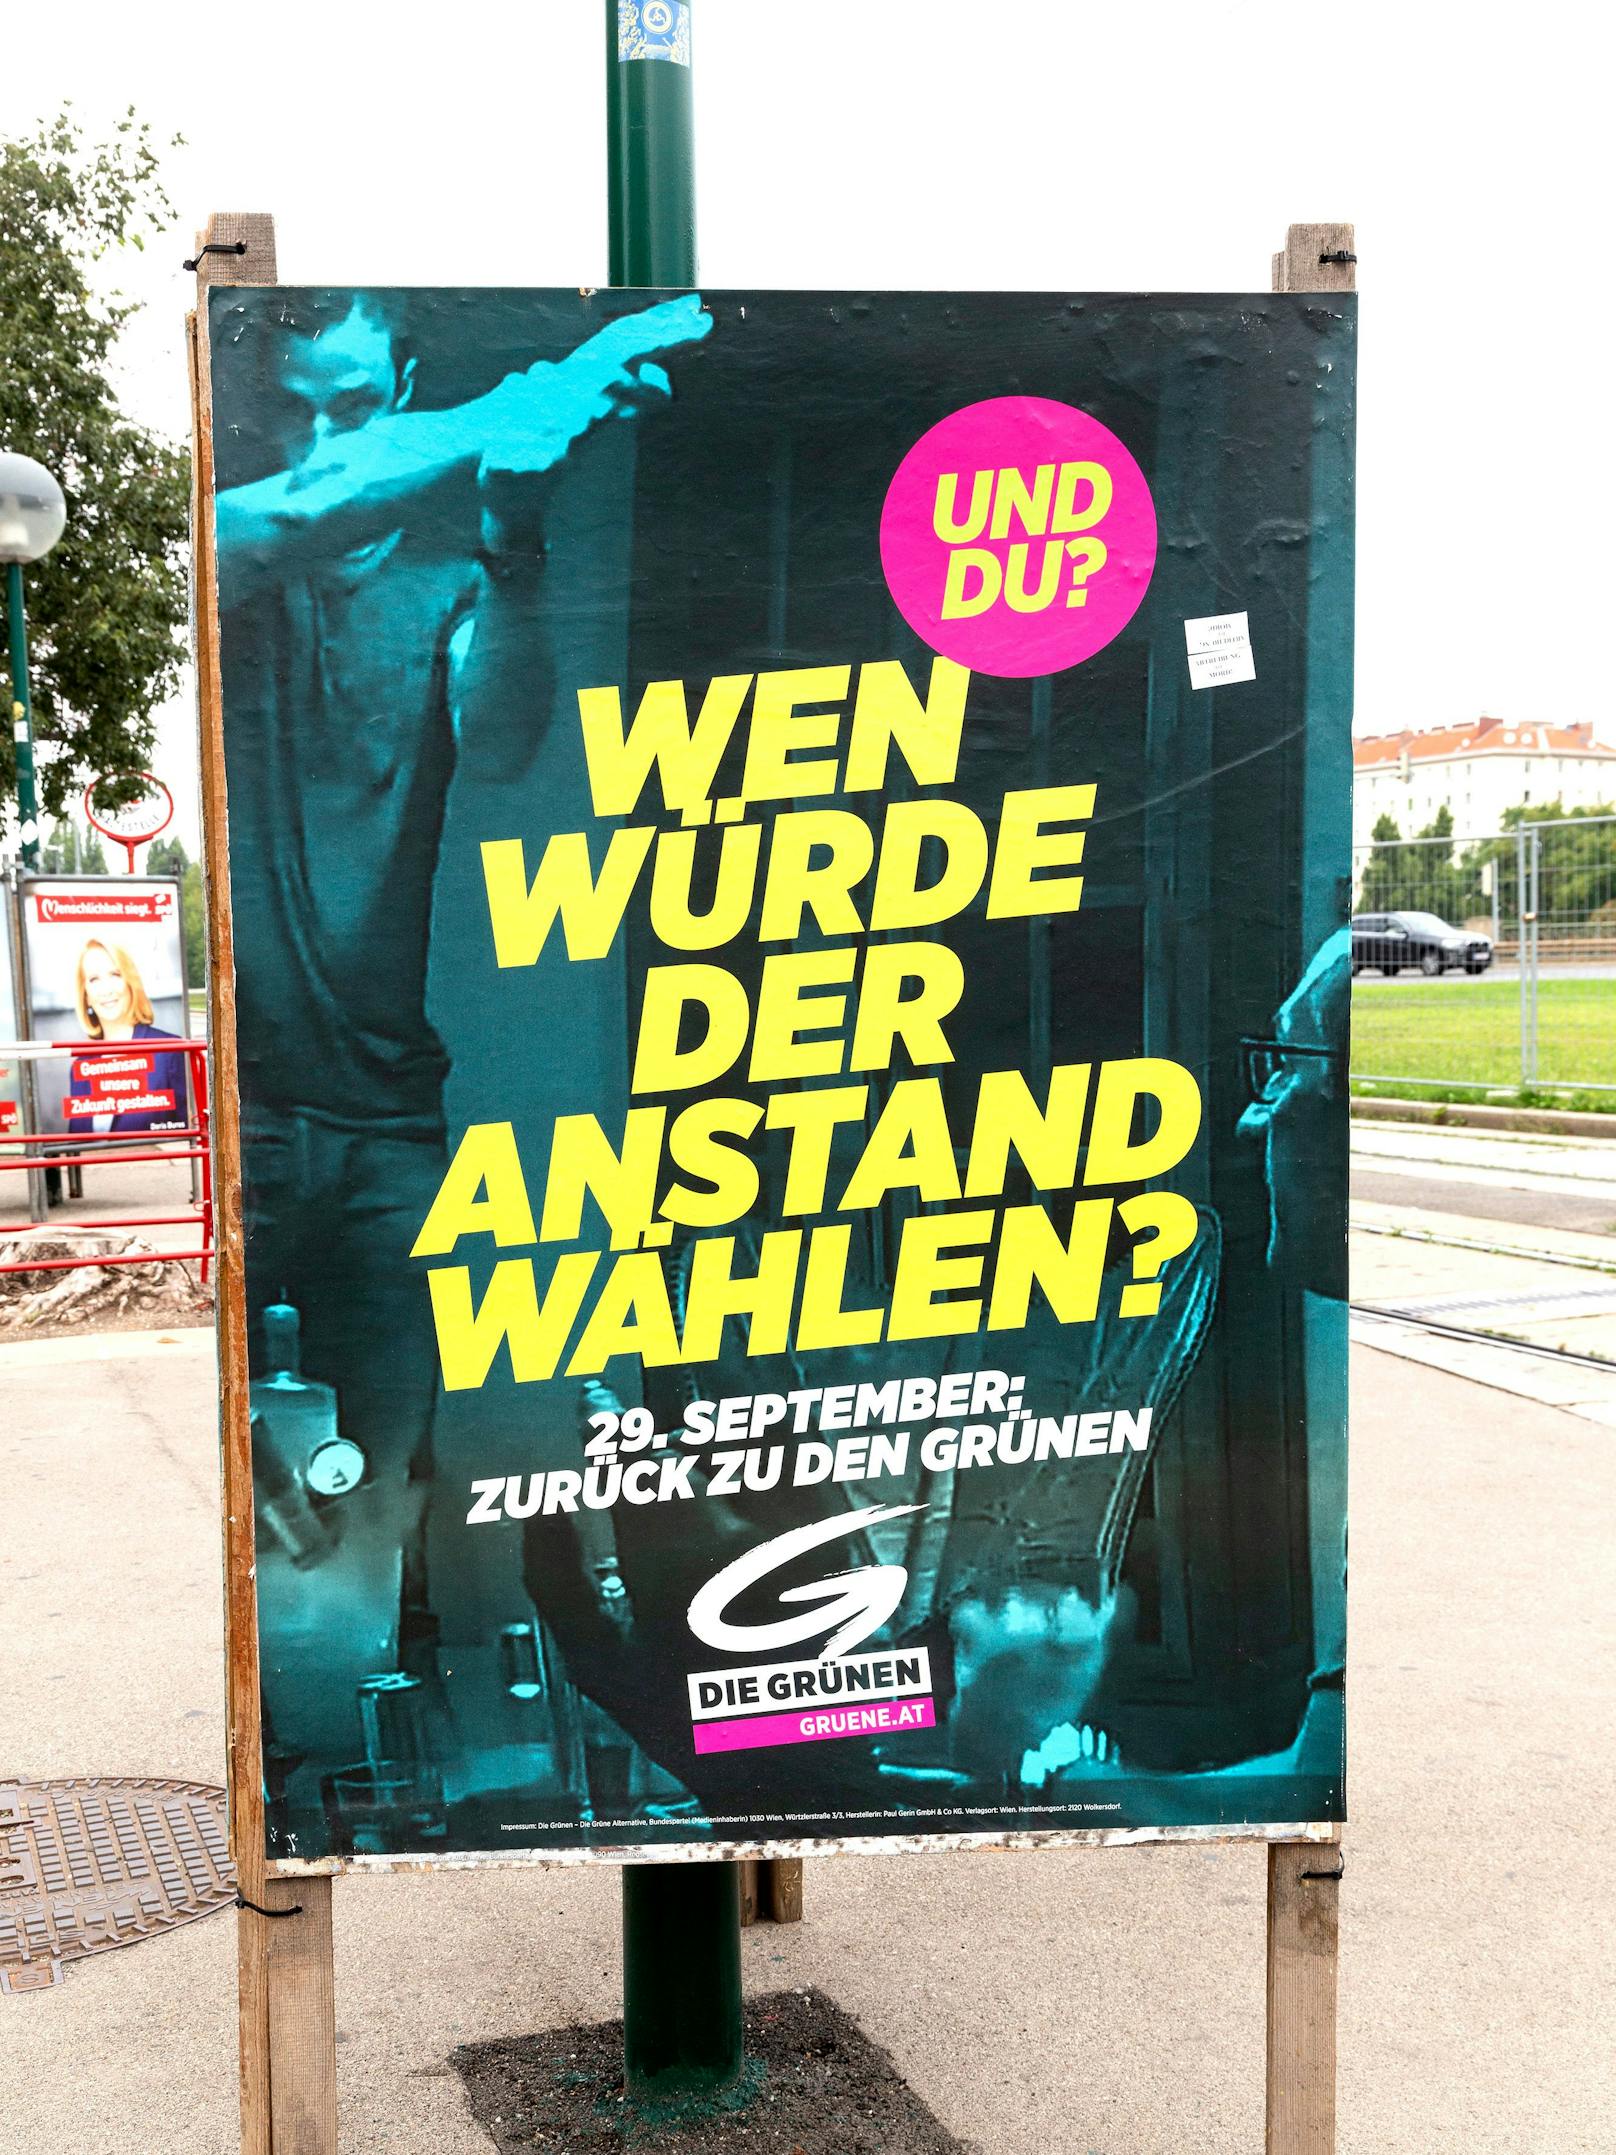 "Wen würde der Anstand wählen?" plakatierten die Grünen 2019. Die Partei werfe ihre Maßstäbe über Bord, kritisiert das Ehepaar Bohrn Mena.